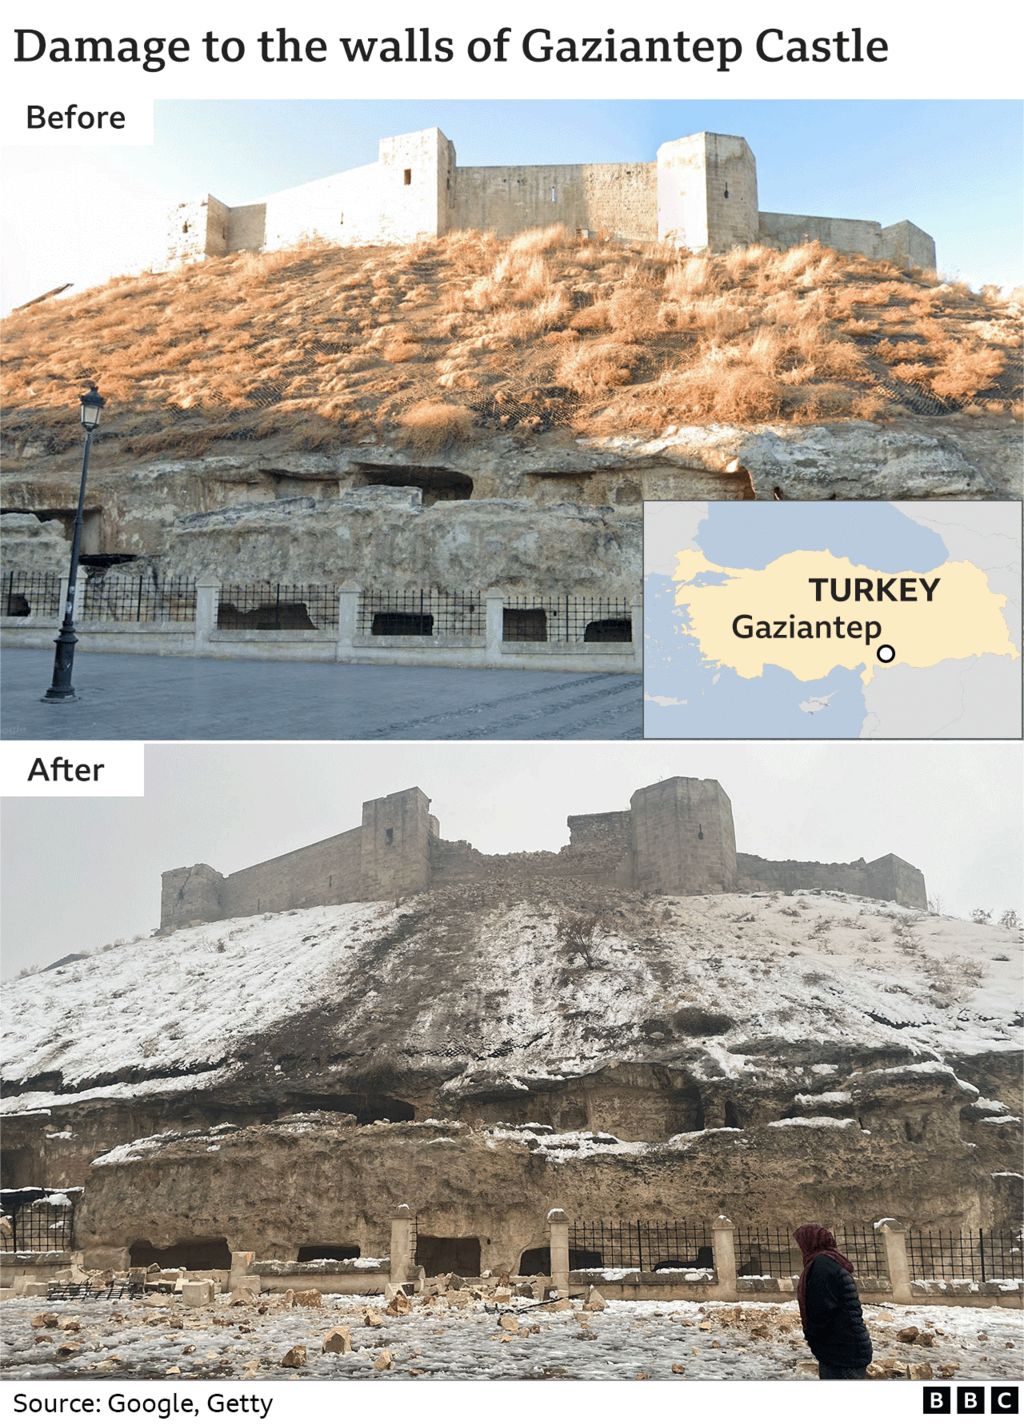 Изображения, показывающие повреждения стен замка Газиантеп